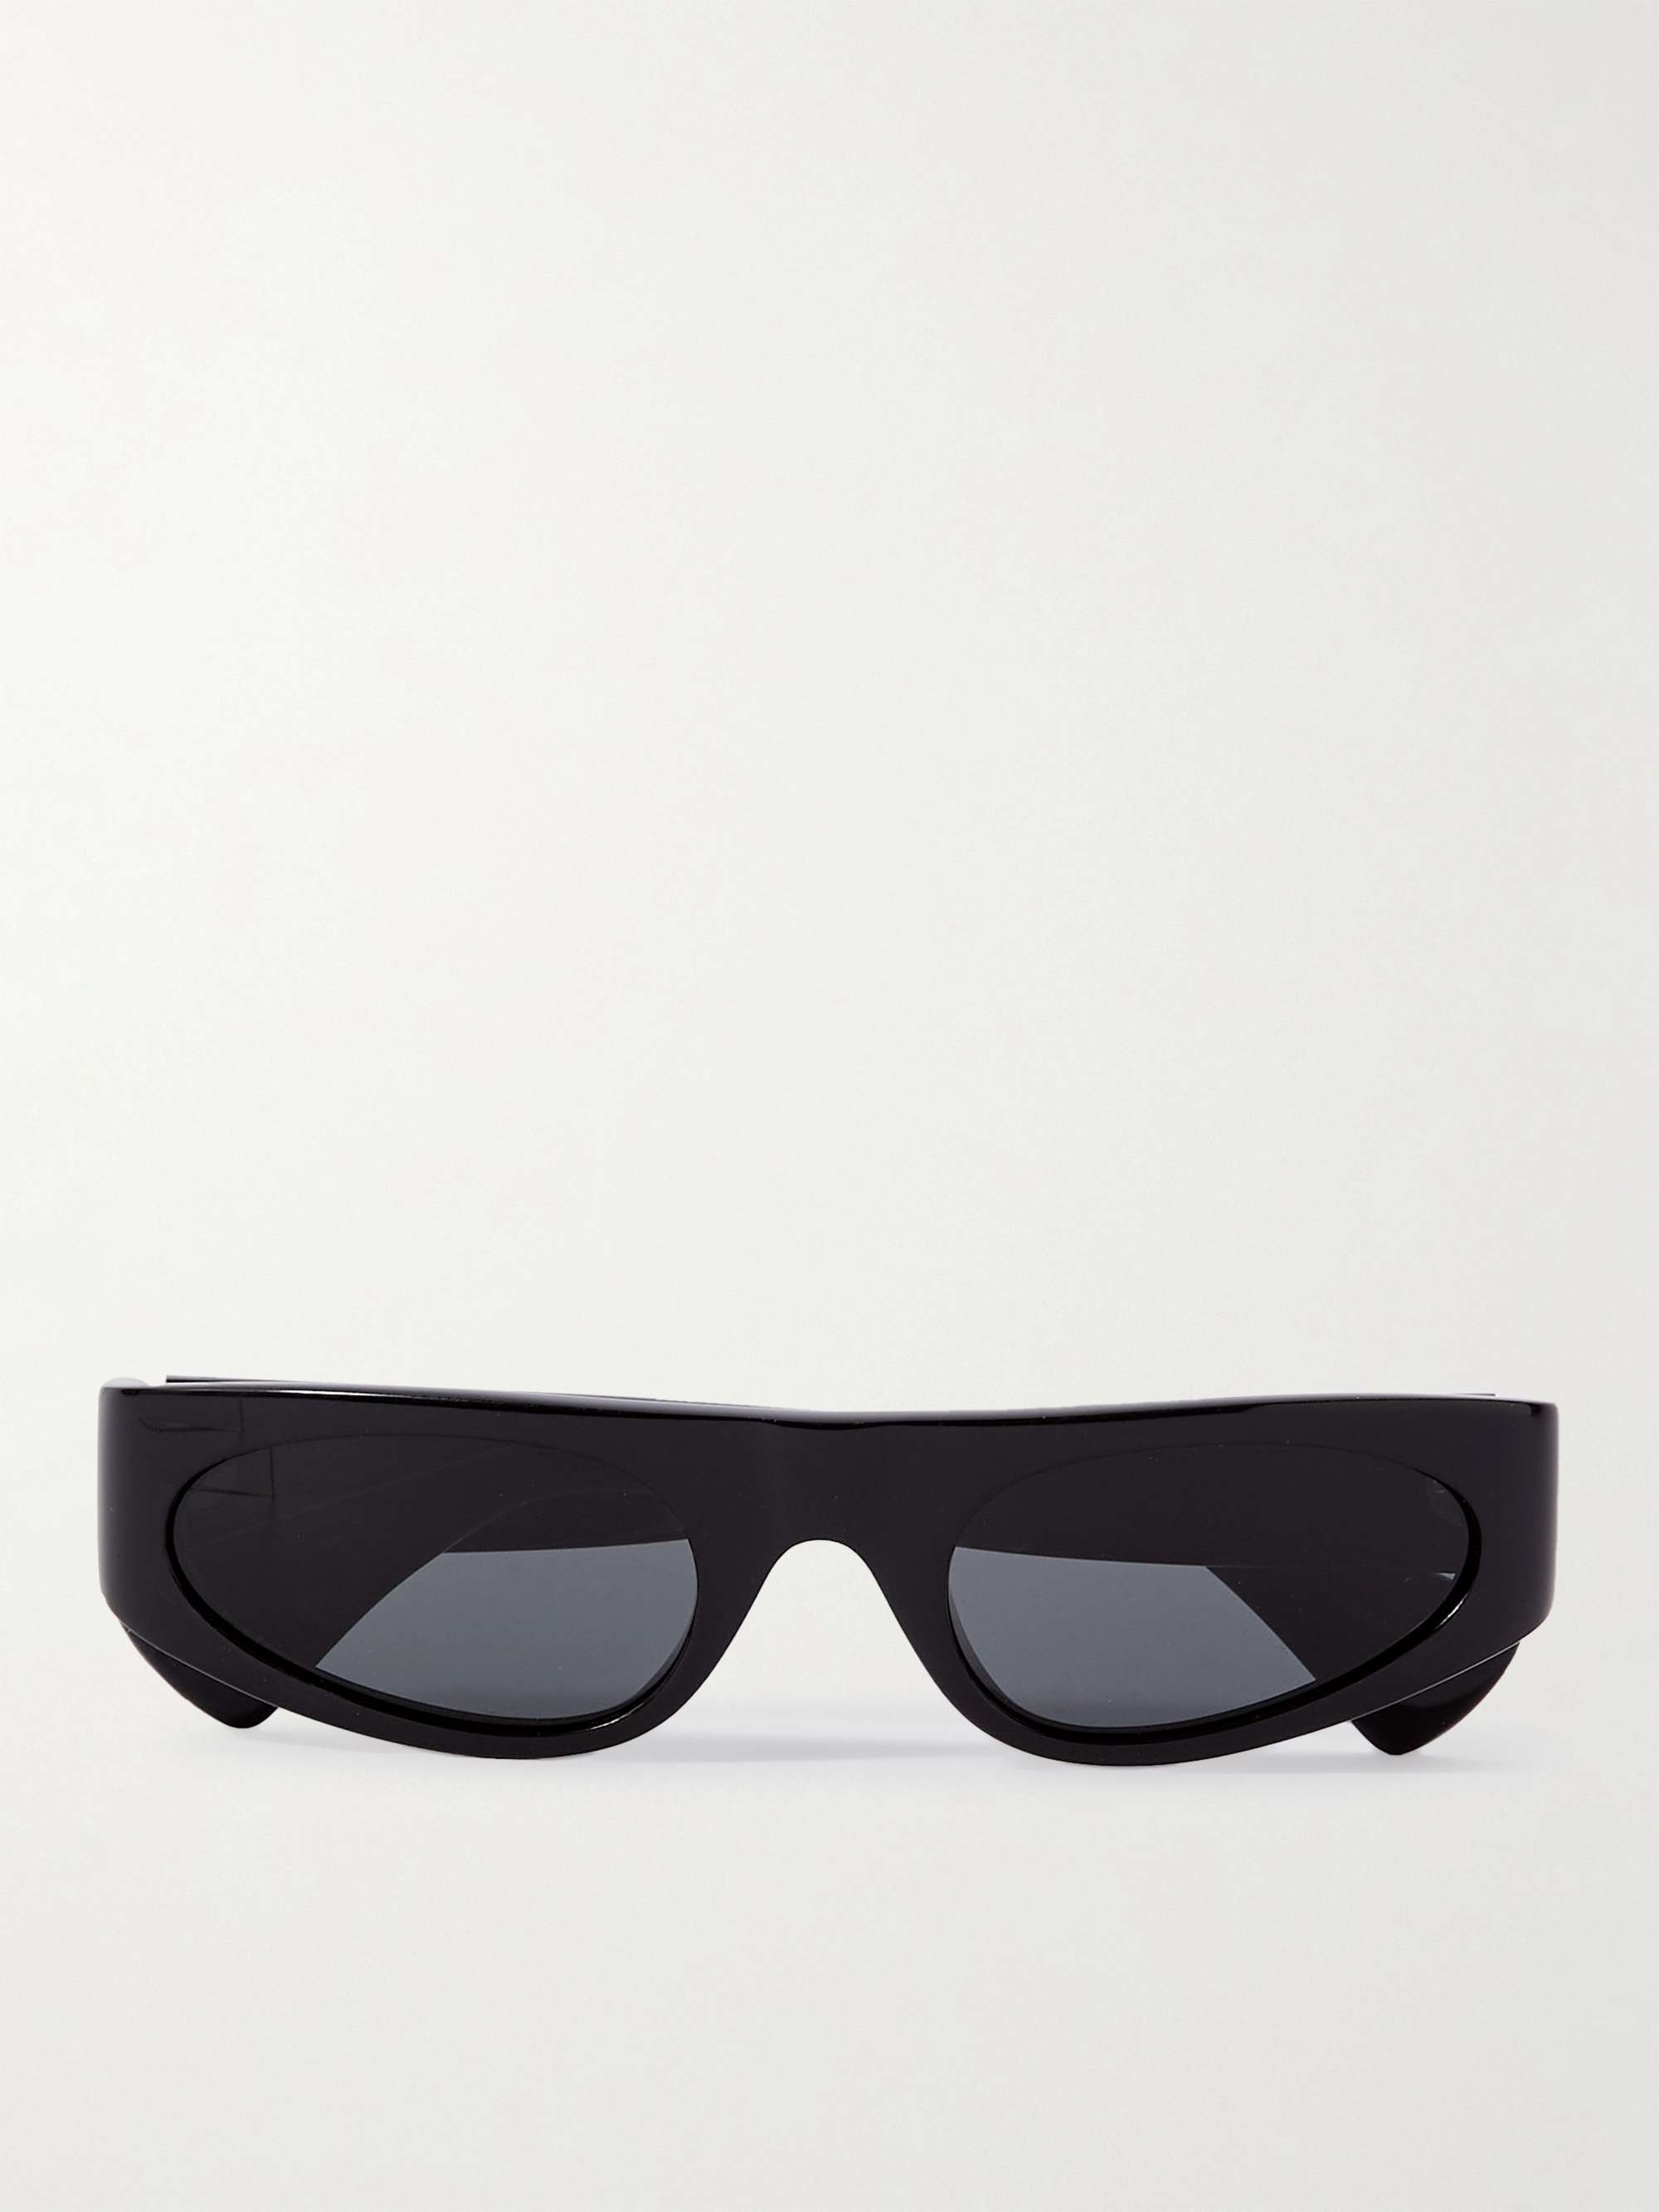 أسود نظارات شمسية بإطار مستطيل من الأسيتات | CELINE HOMME | MR PORTER